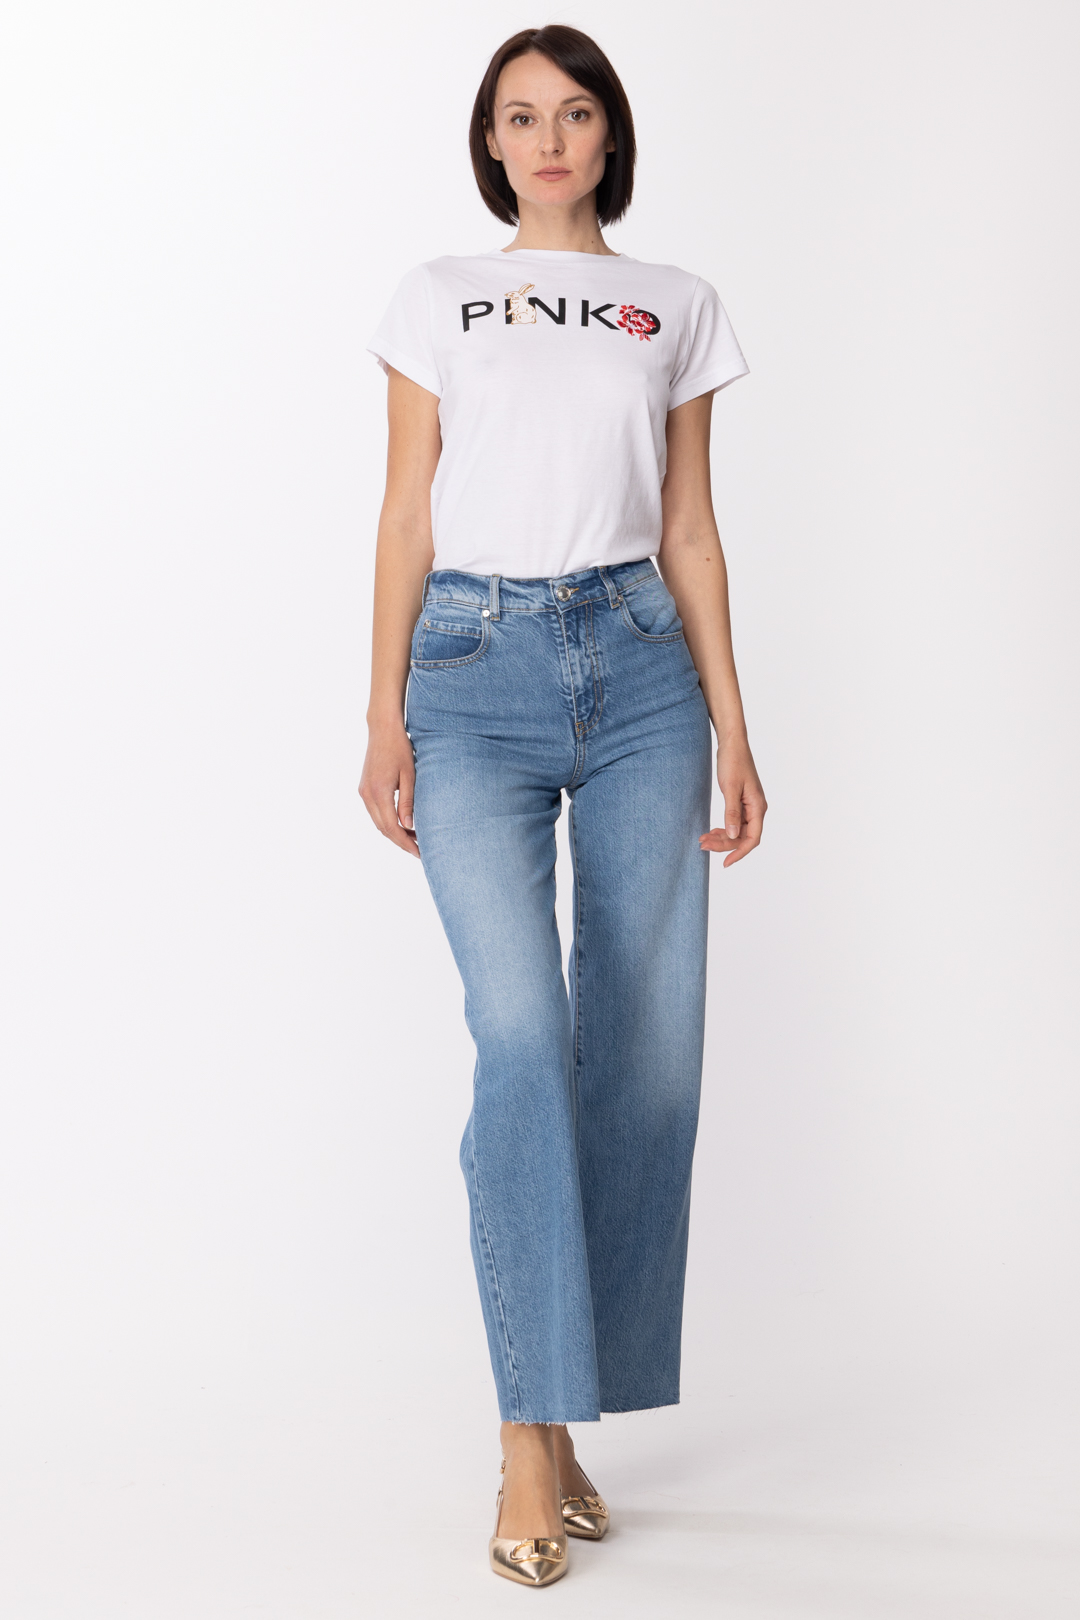 Vorschau: Pinko Jeans mit weitem Bein und hoher Taille LAVAGGIO STONE MEDIO CHIARO